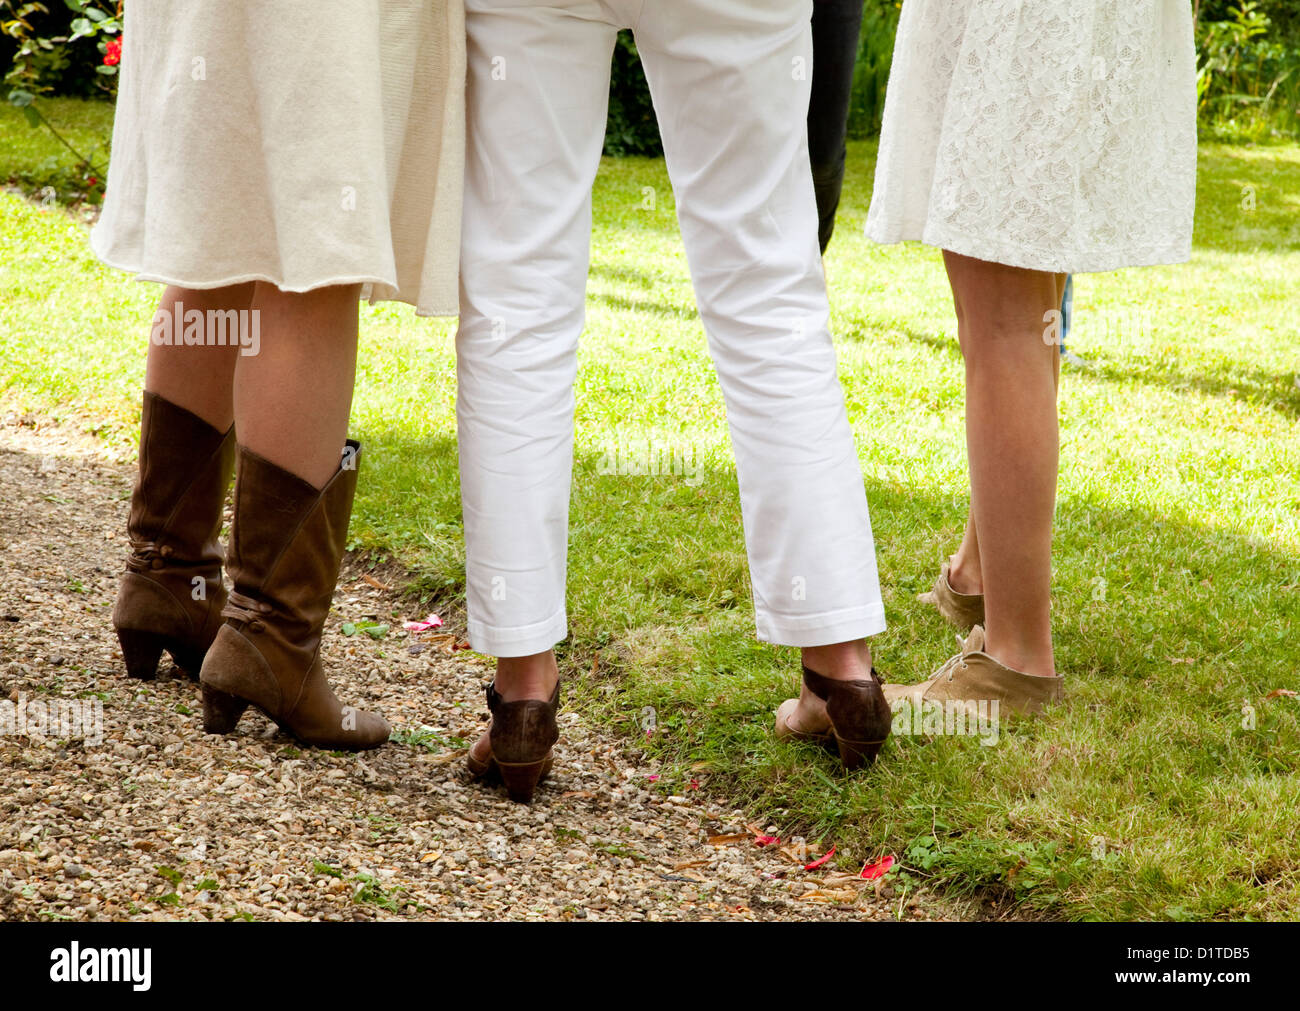 Drei Gruppen von Frauen Beine stehen in weißer Kleidung und braune Schuhe zusammen auf dem grünen Rasen in einem Garten im Sommer. Stockfoto